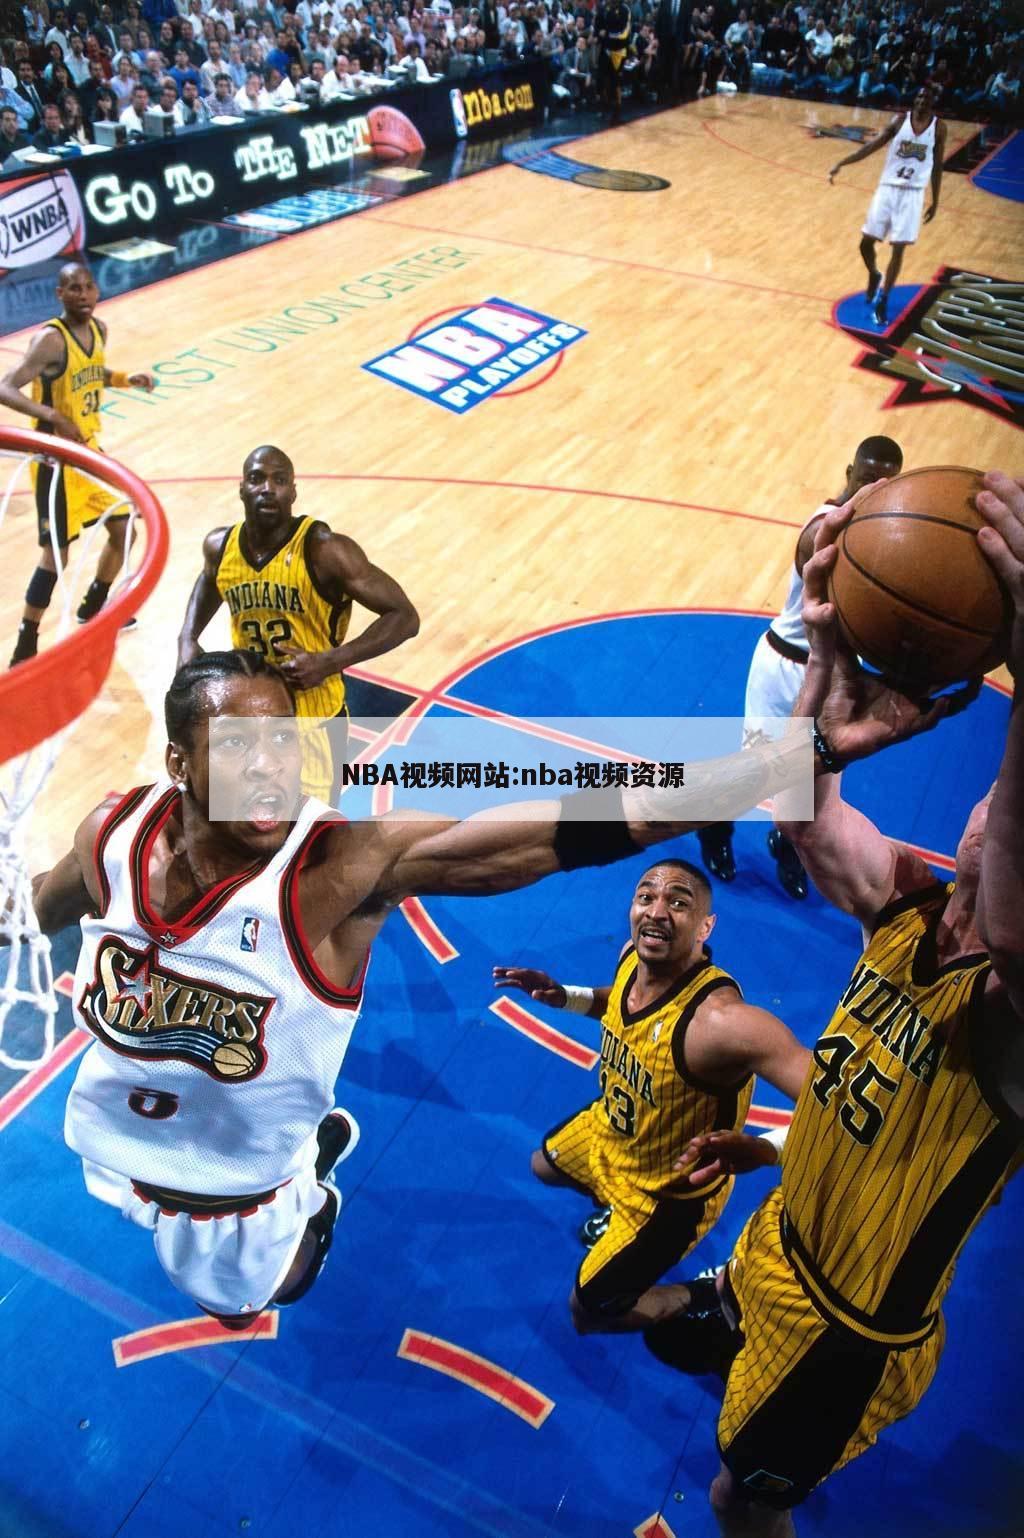 NBA视频网站:nba视频资源